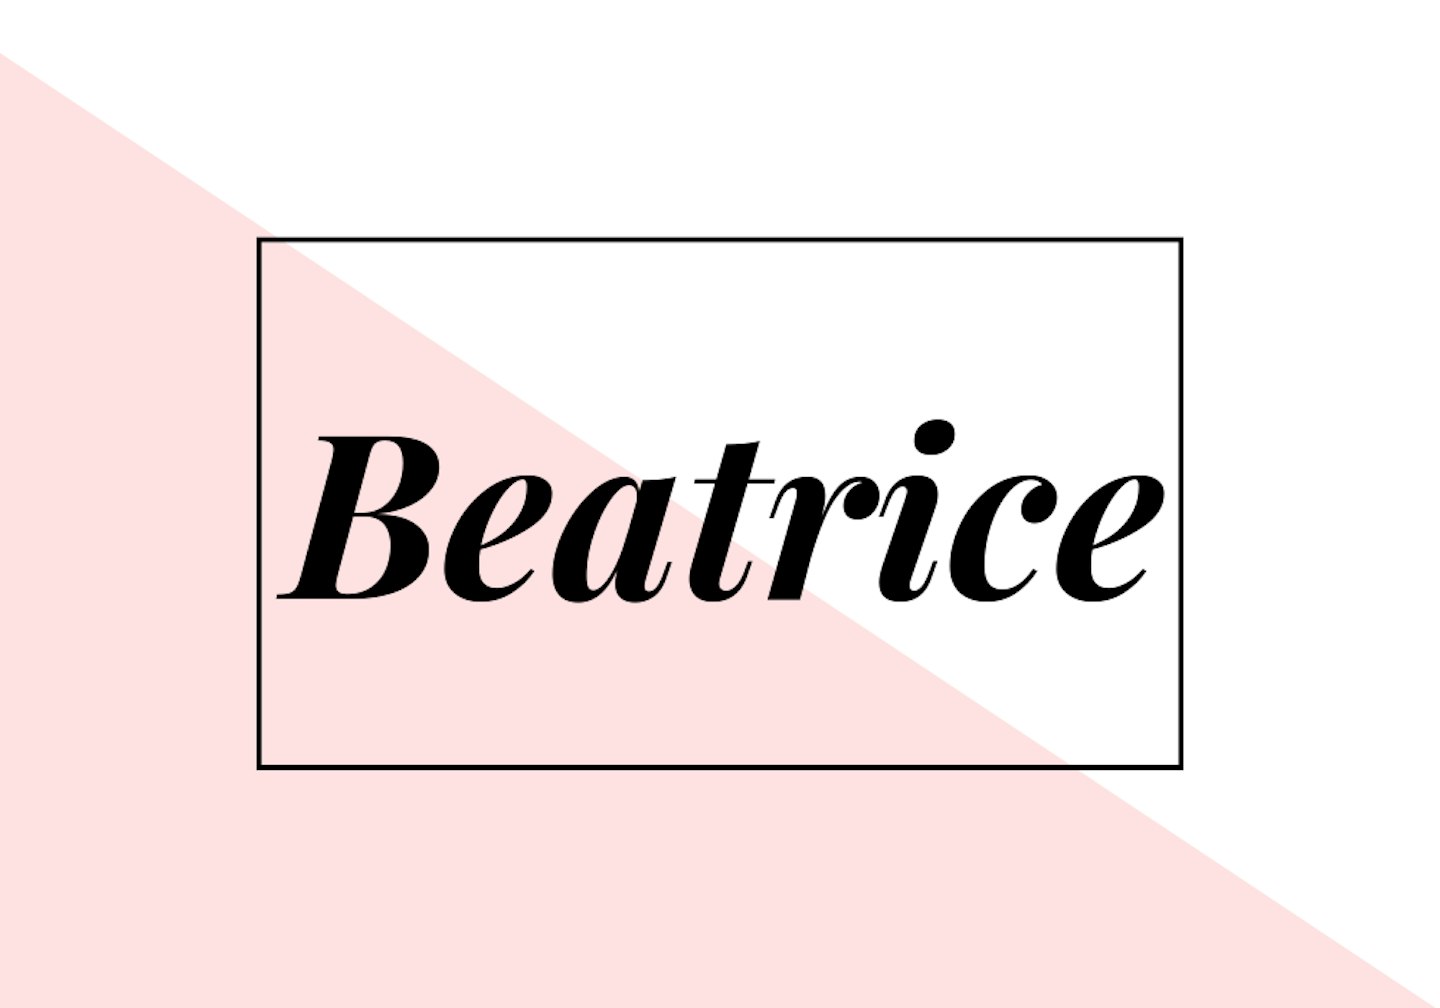 beatrice